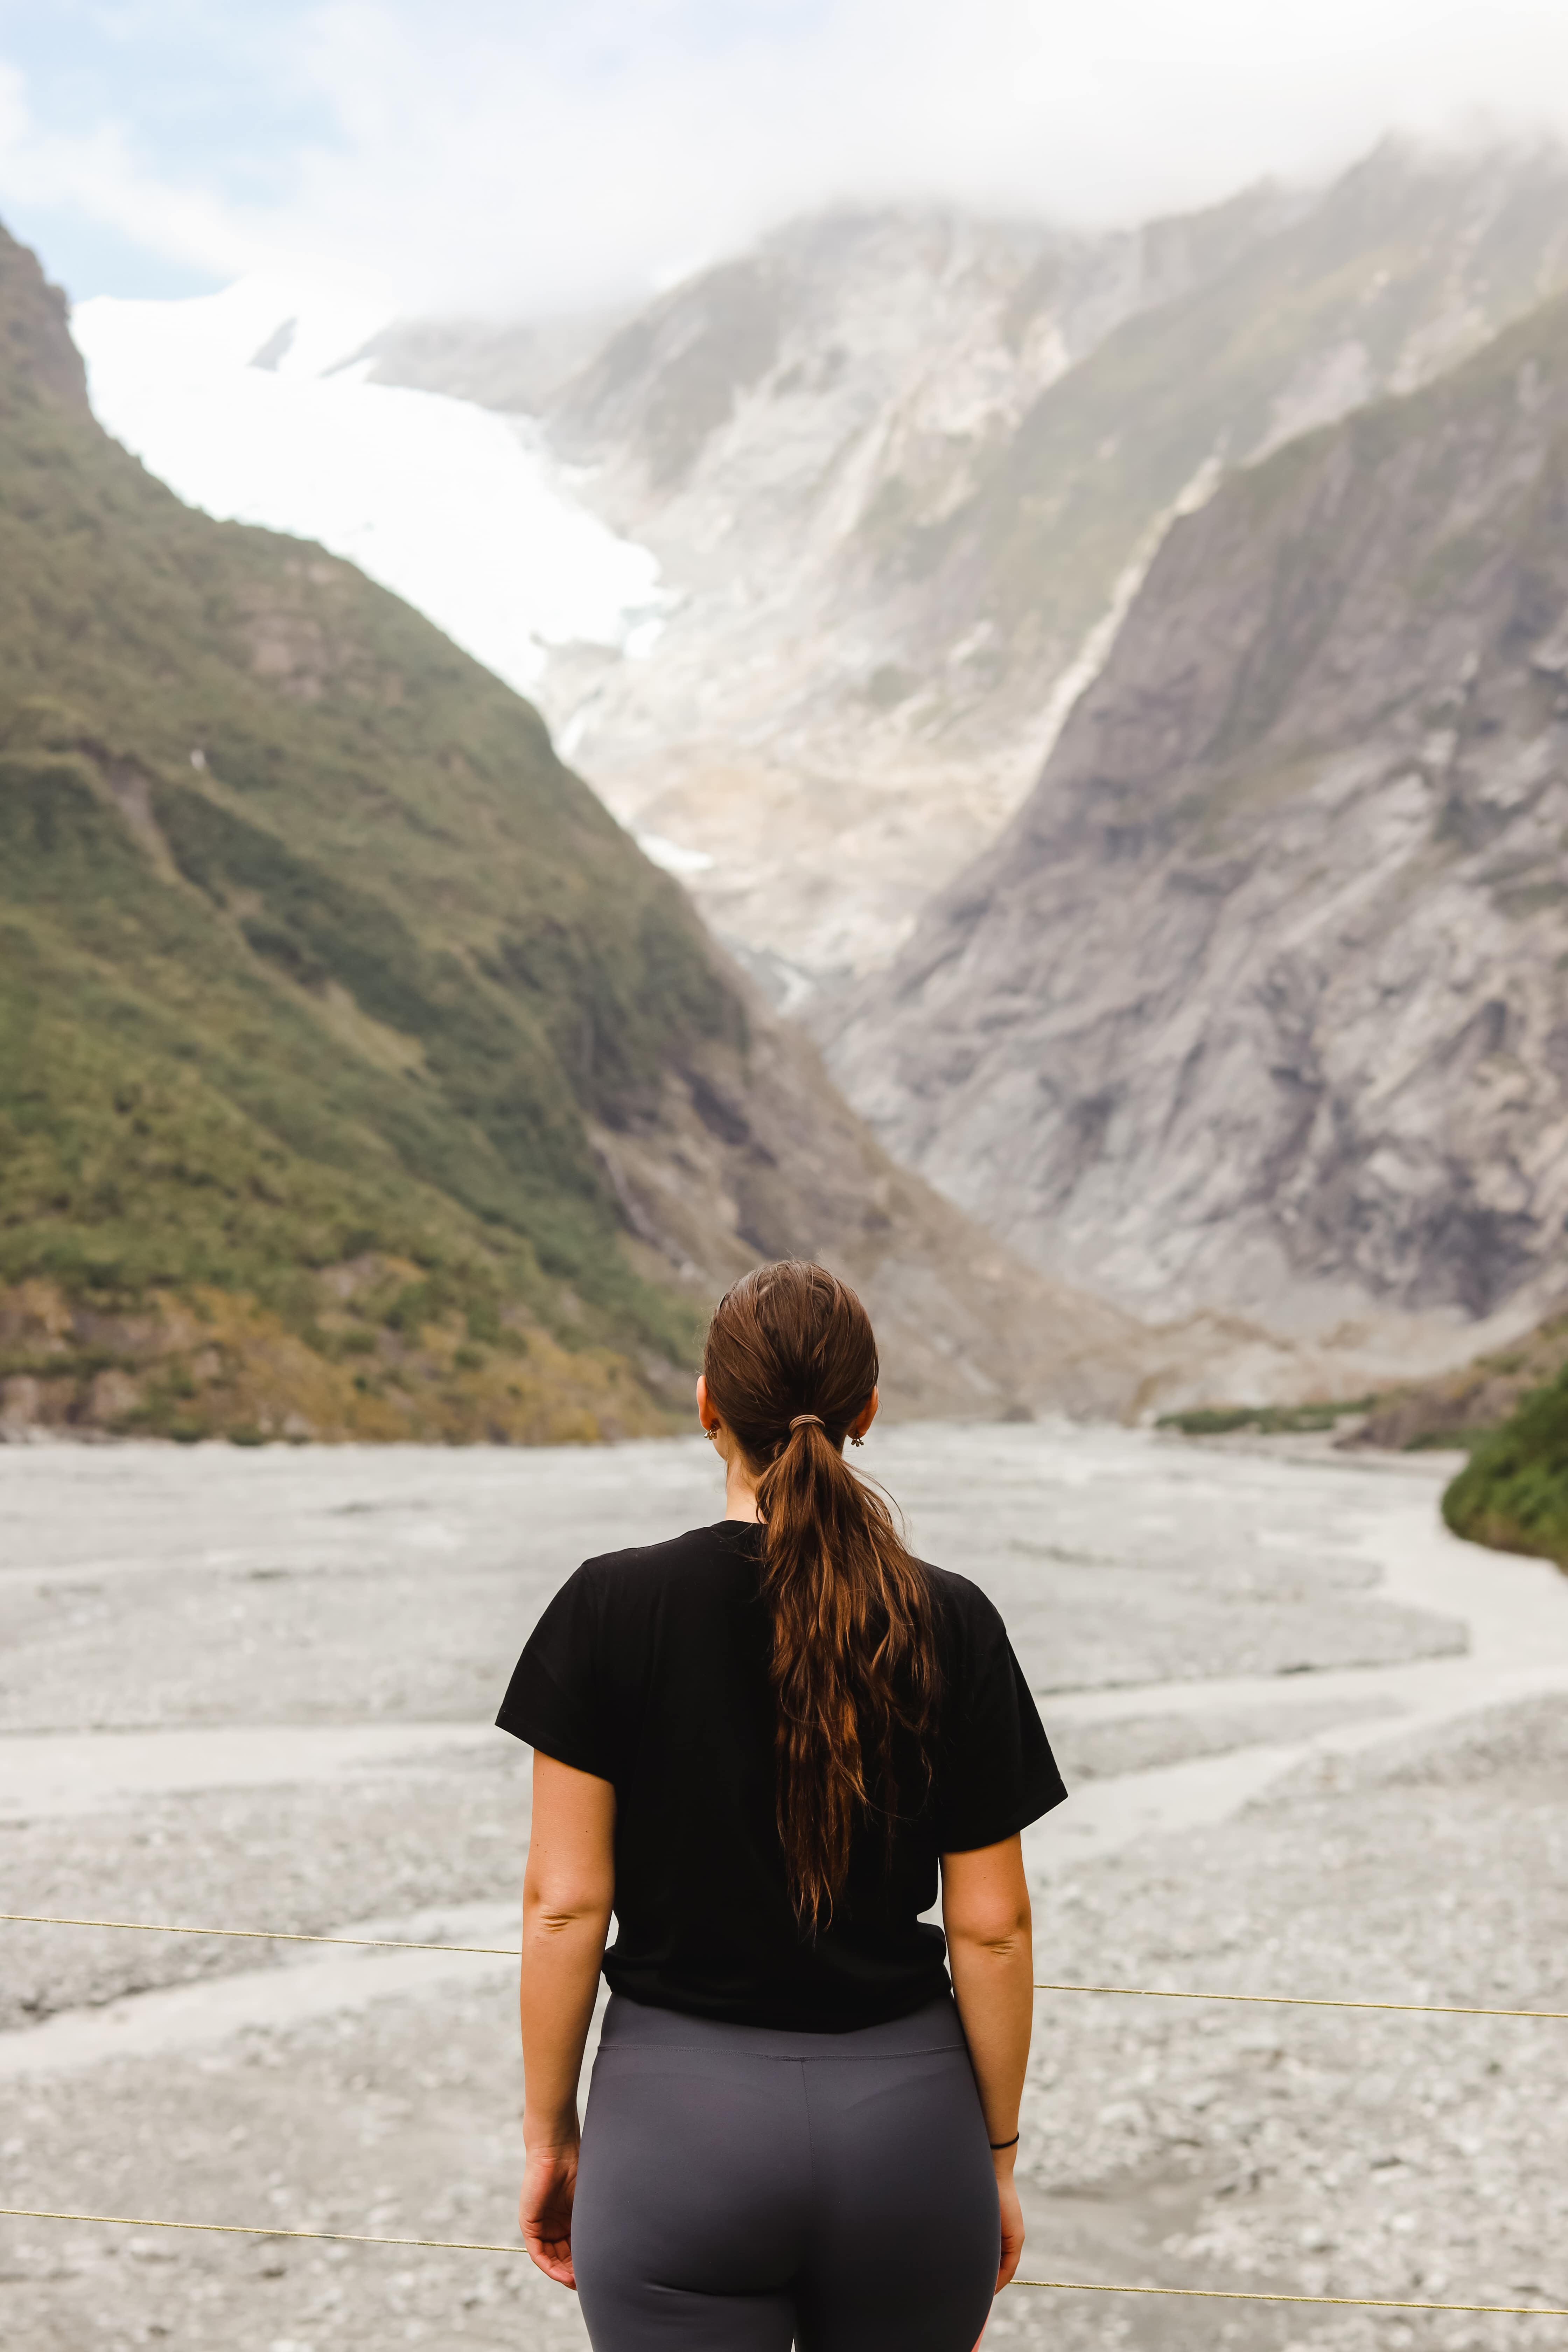 Entdecke den Franz Josef Gletscher in Neuseeland mit AIFS